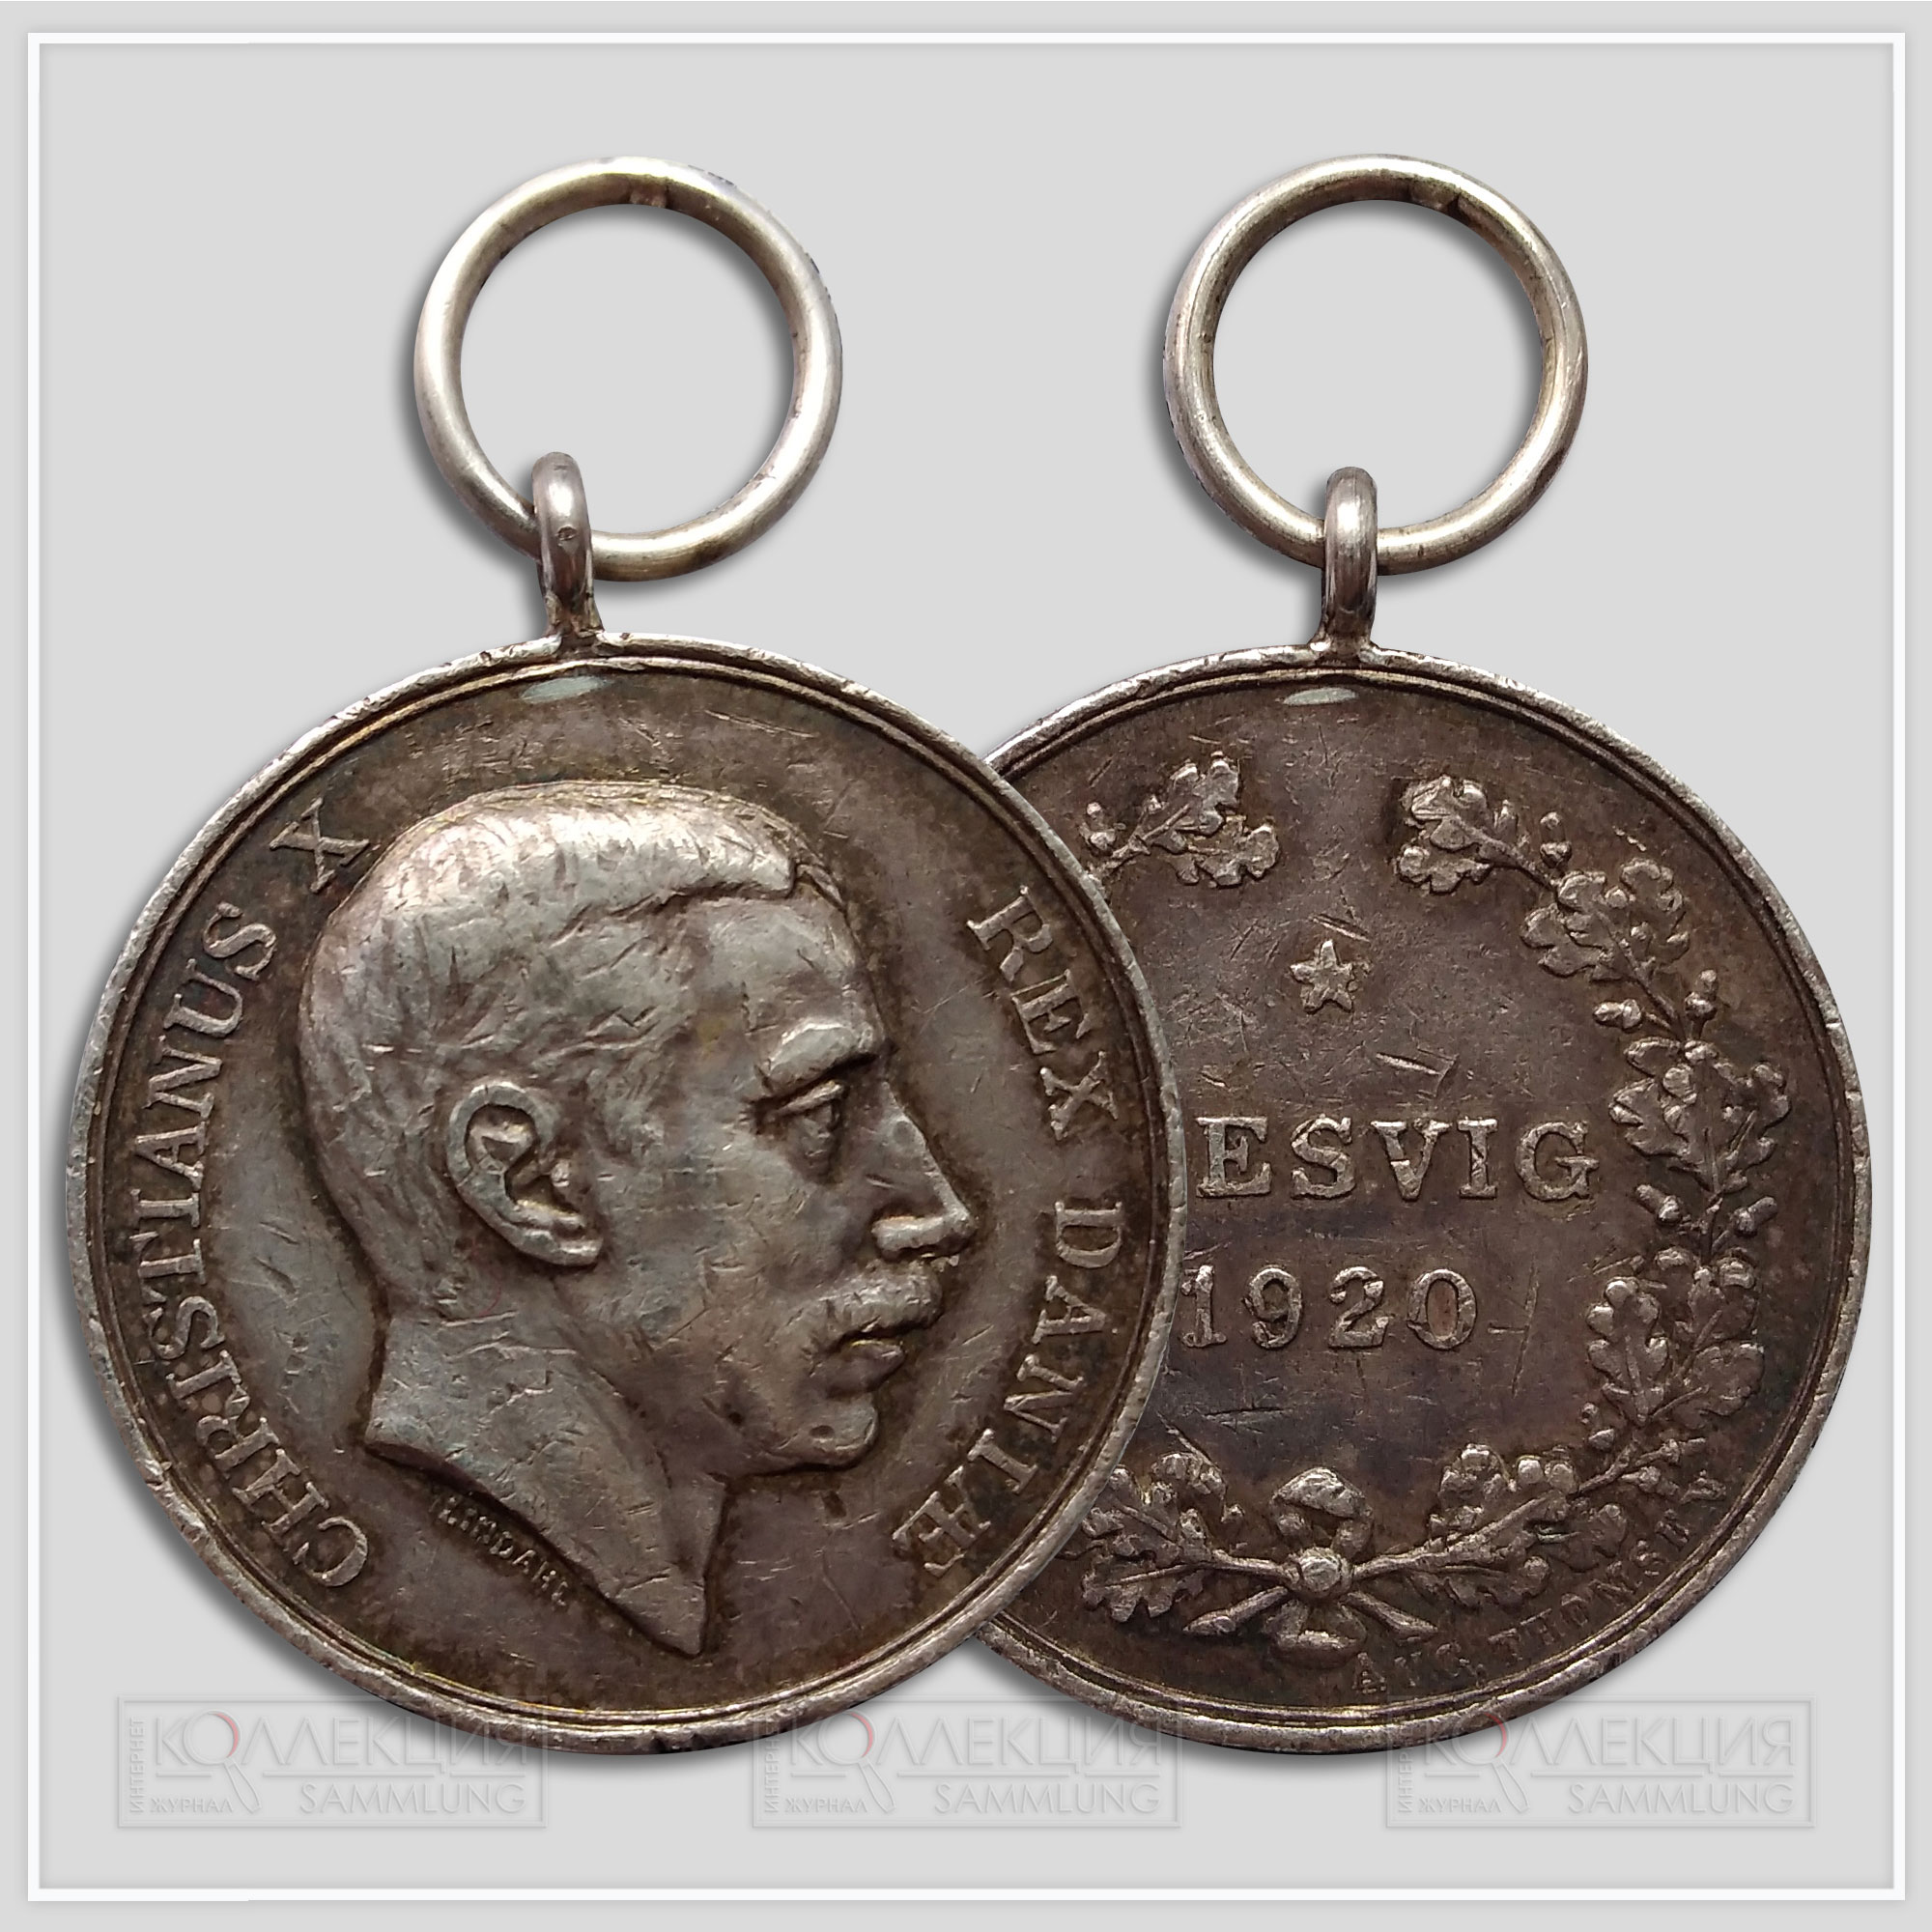 «Шлезвигская Памятная медаль 1920» / «Schleswig Commemorative Medal 1920»